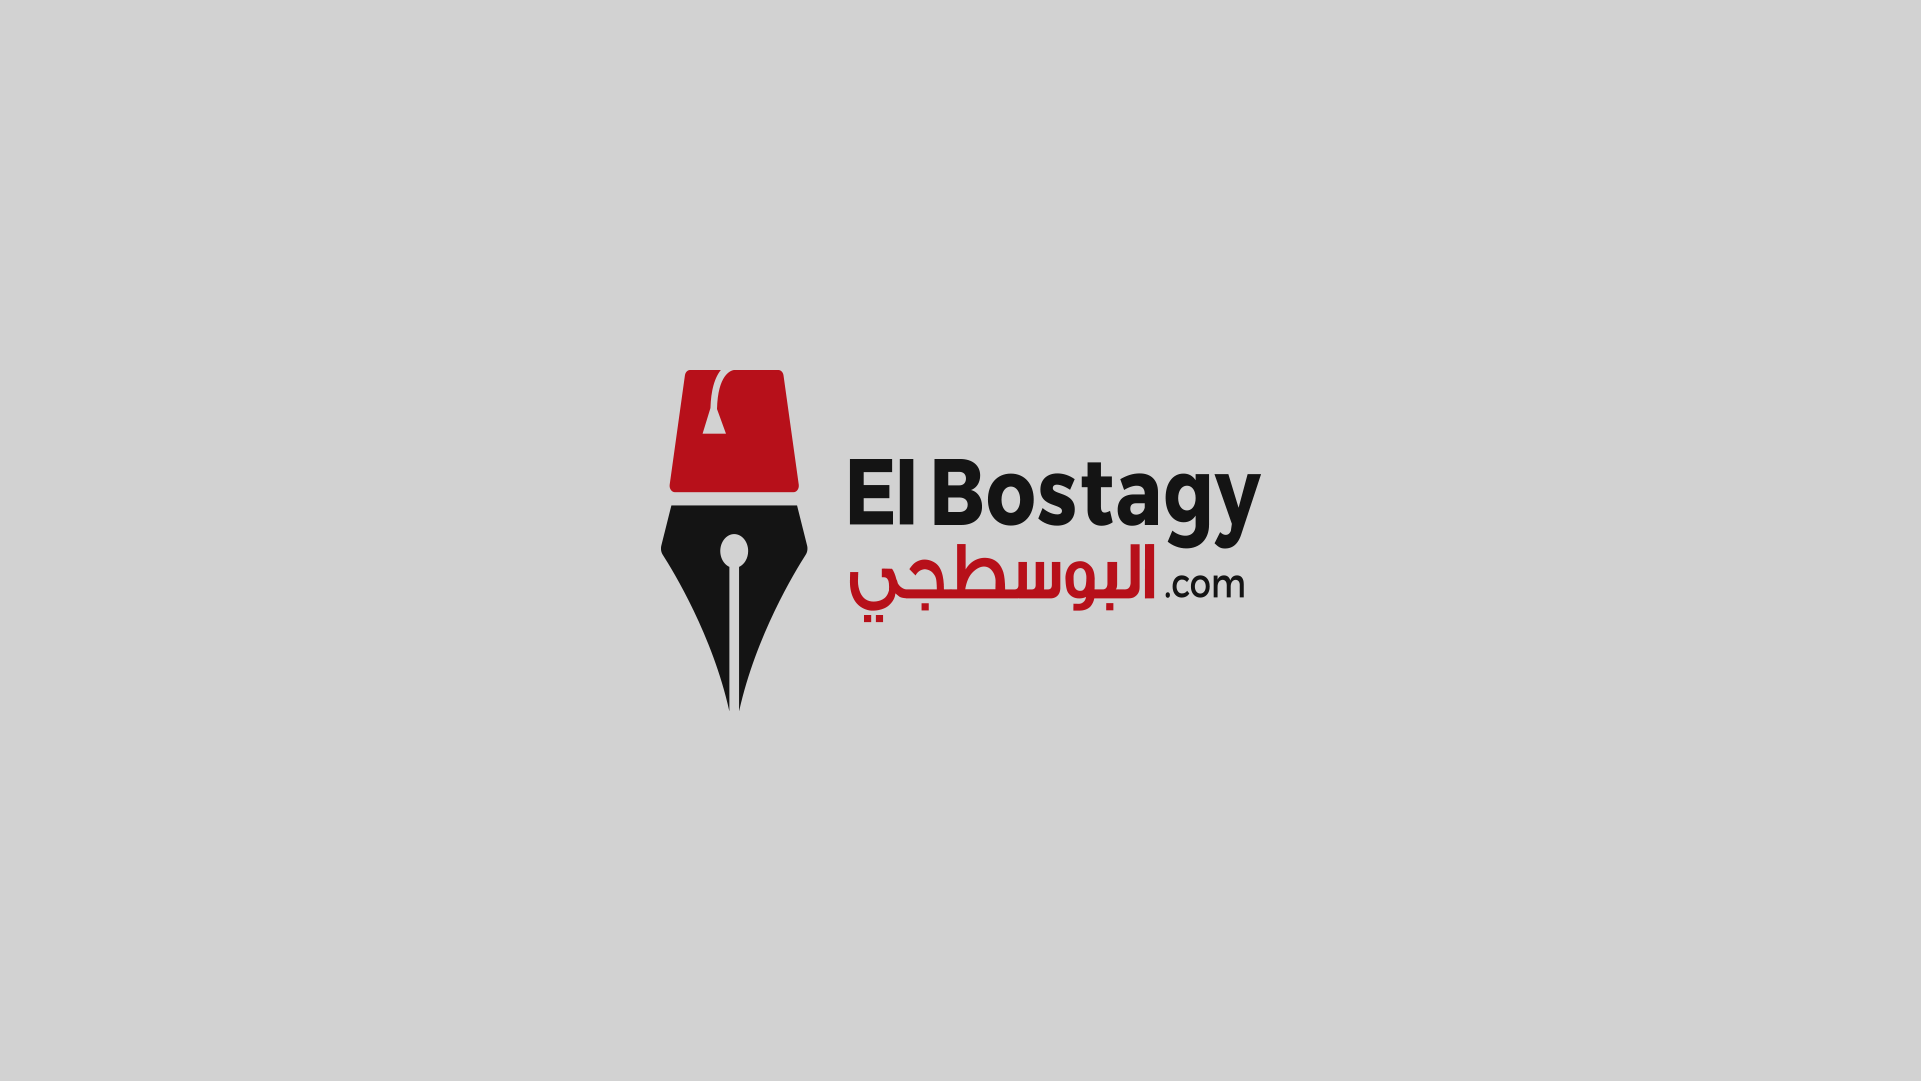 El Bostagy